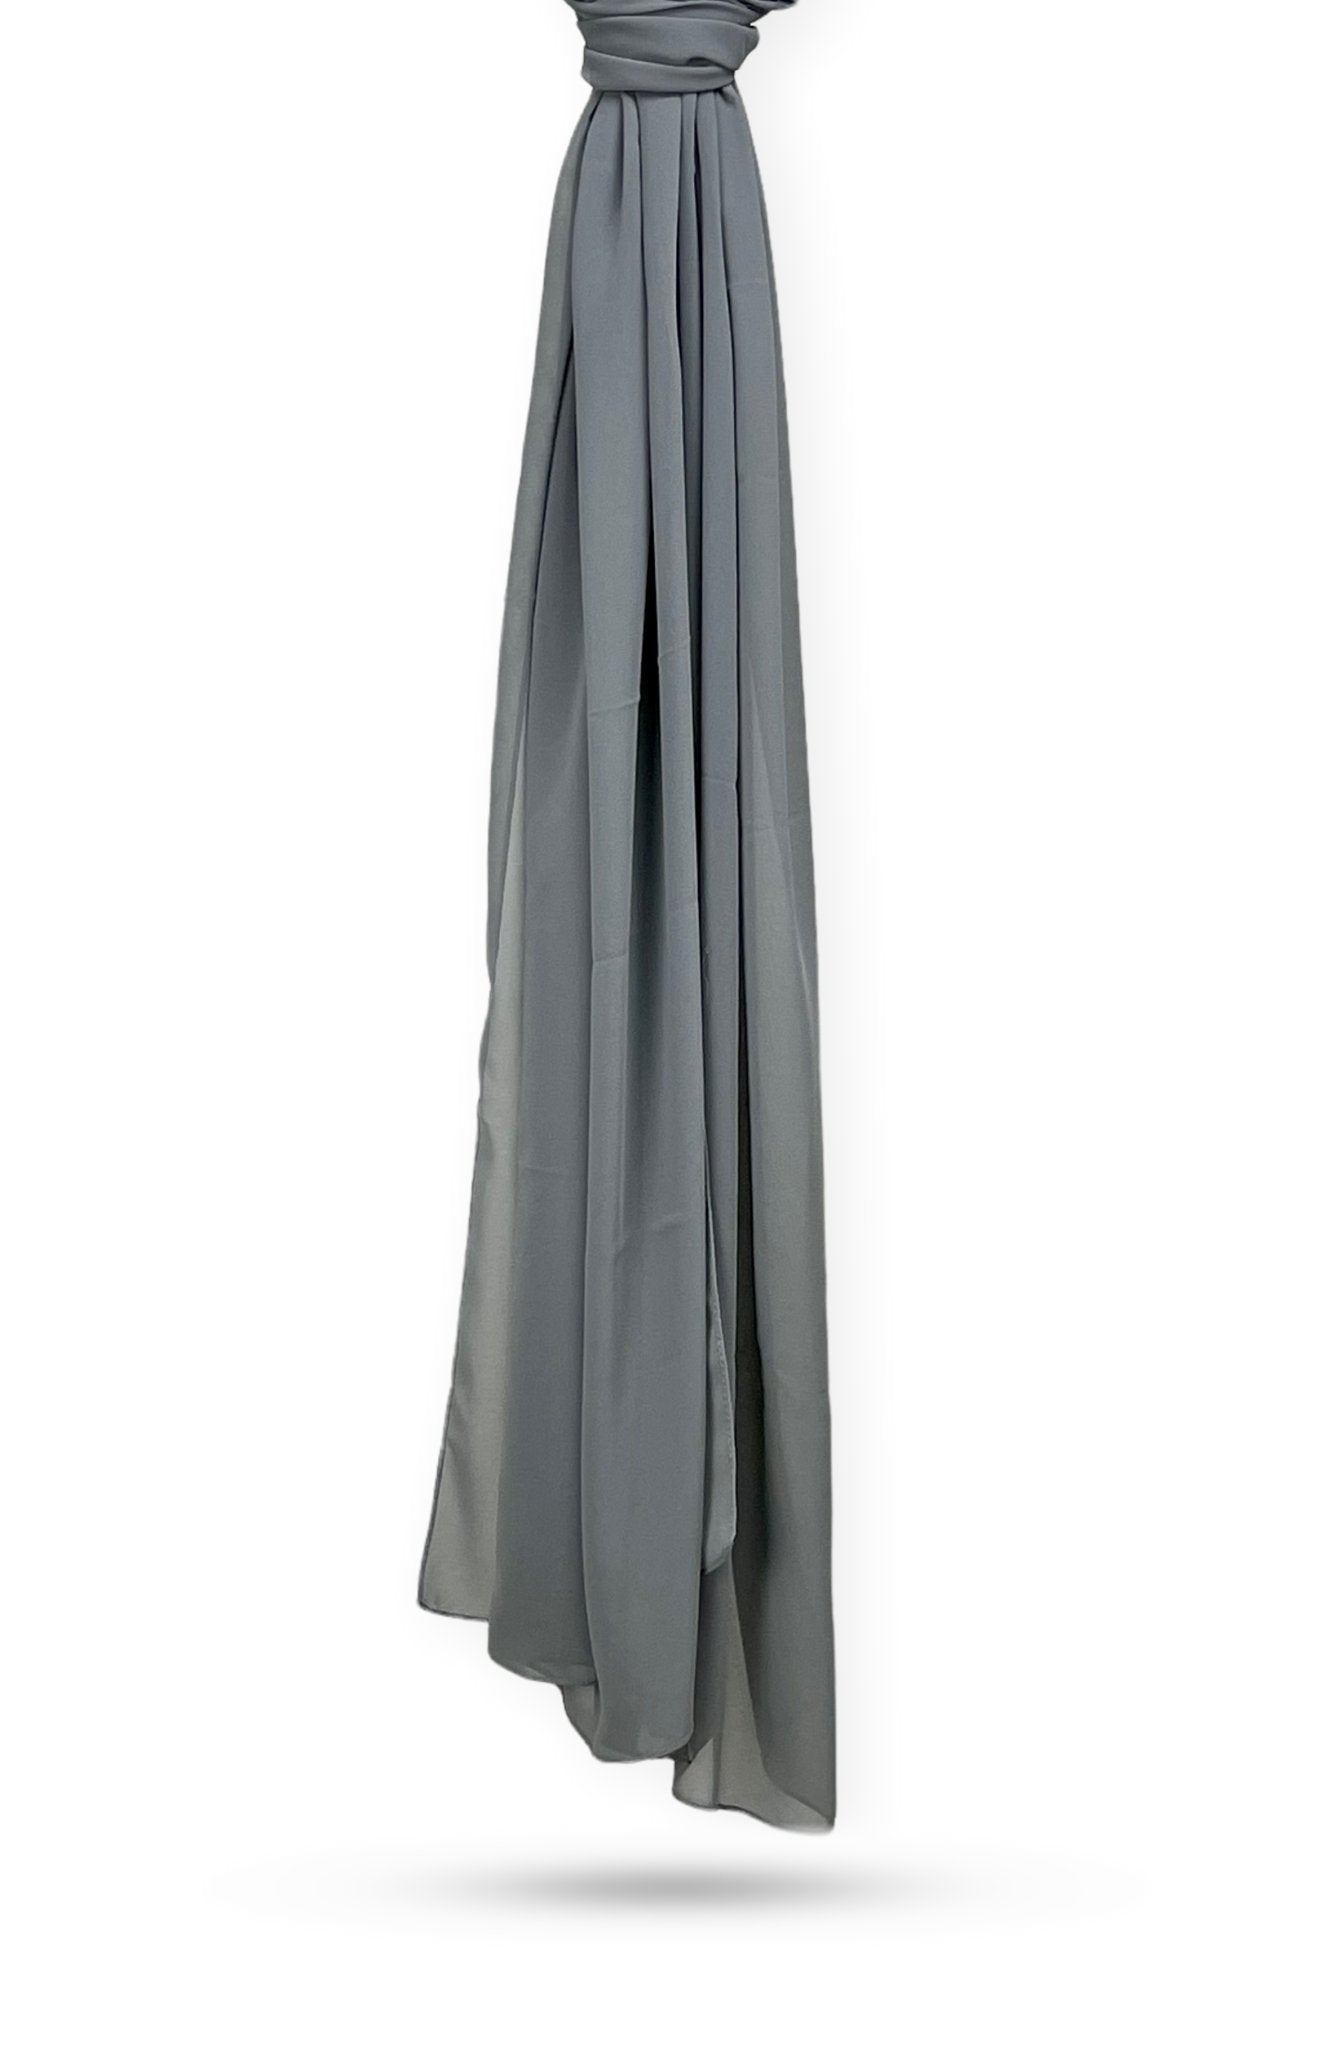 Charcoal Gray Chiffon Hijab - Modesty Box